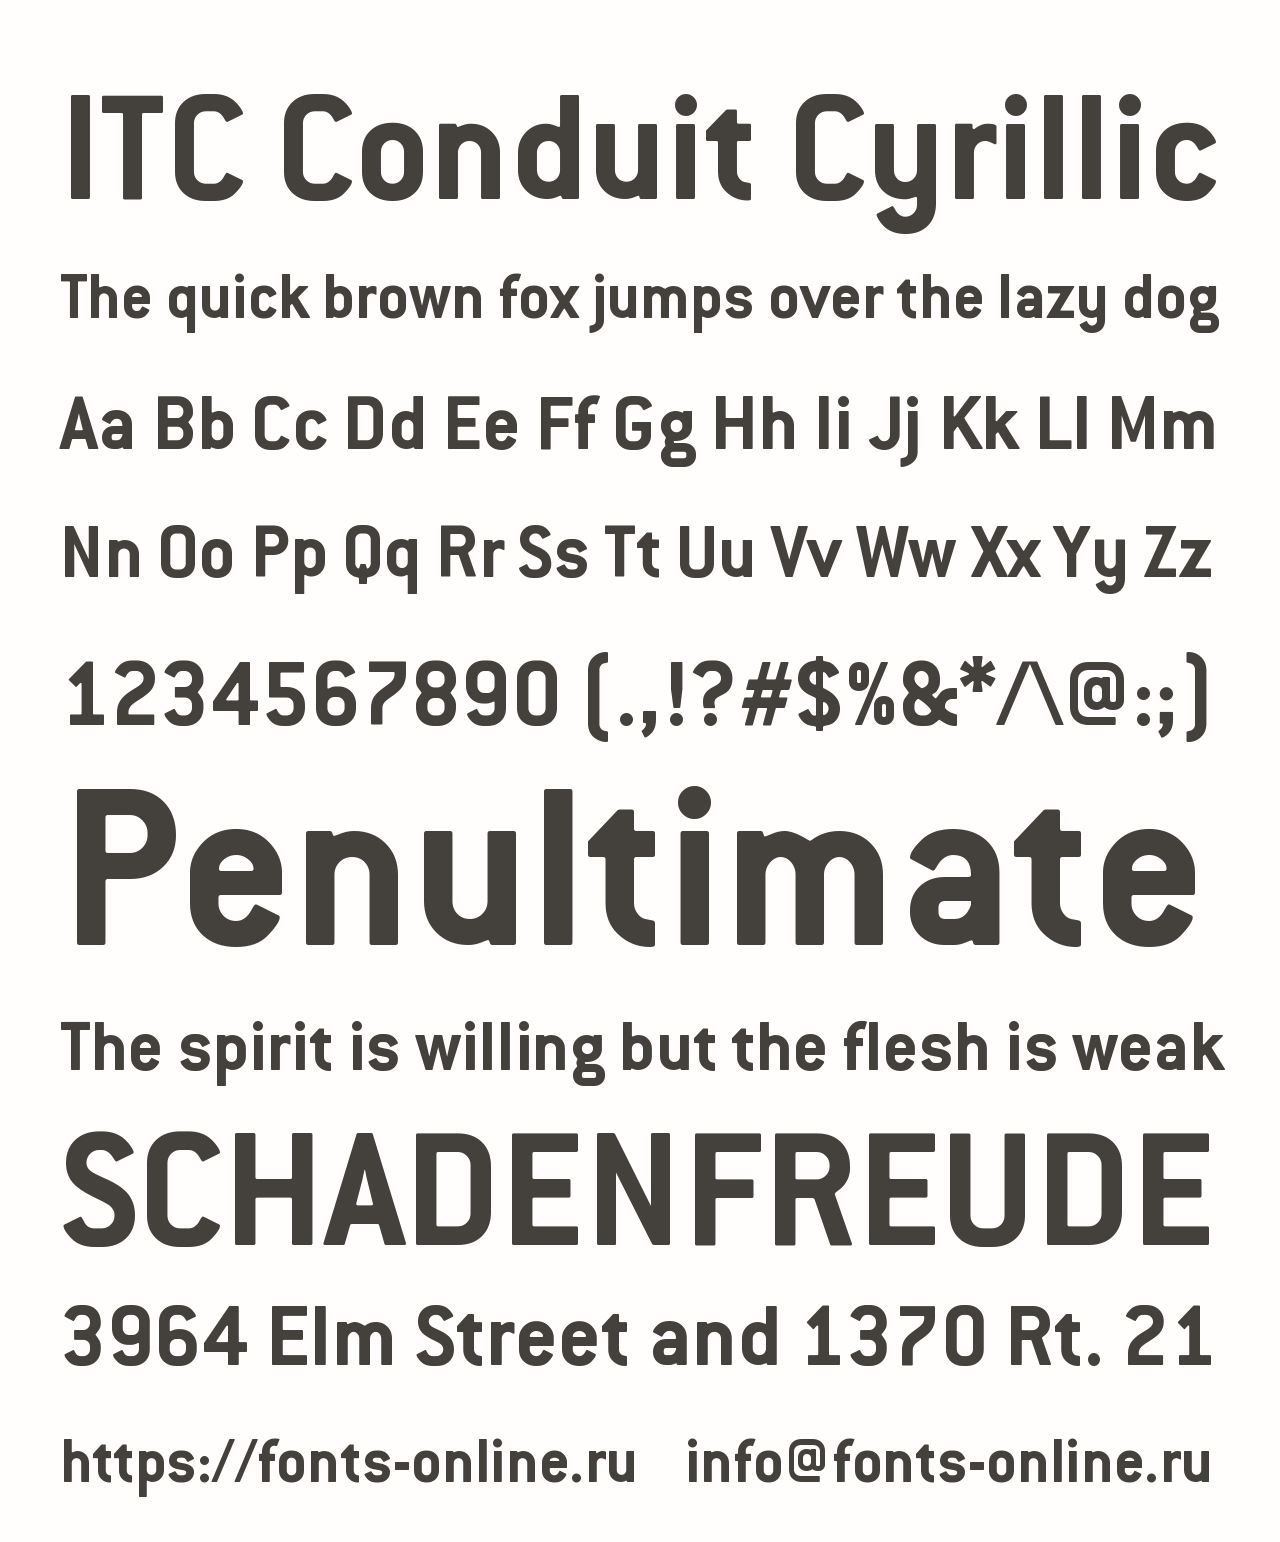 ITC Conduit Cyrillic font